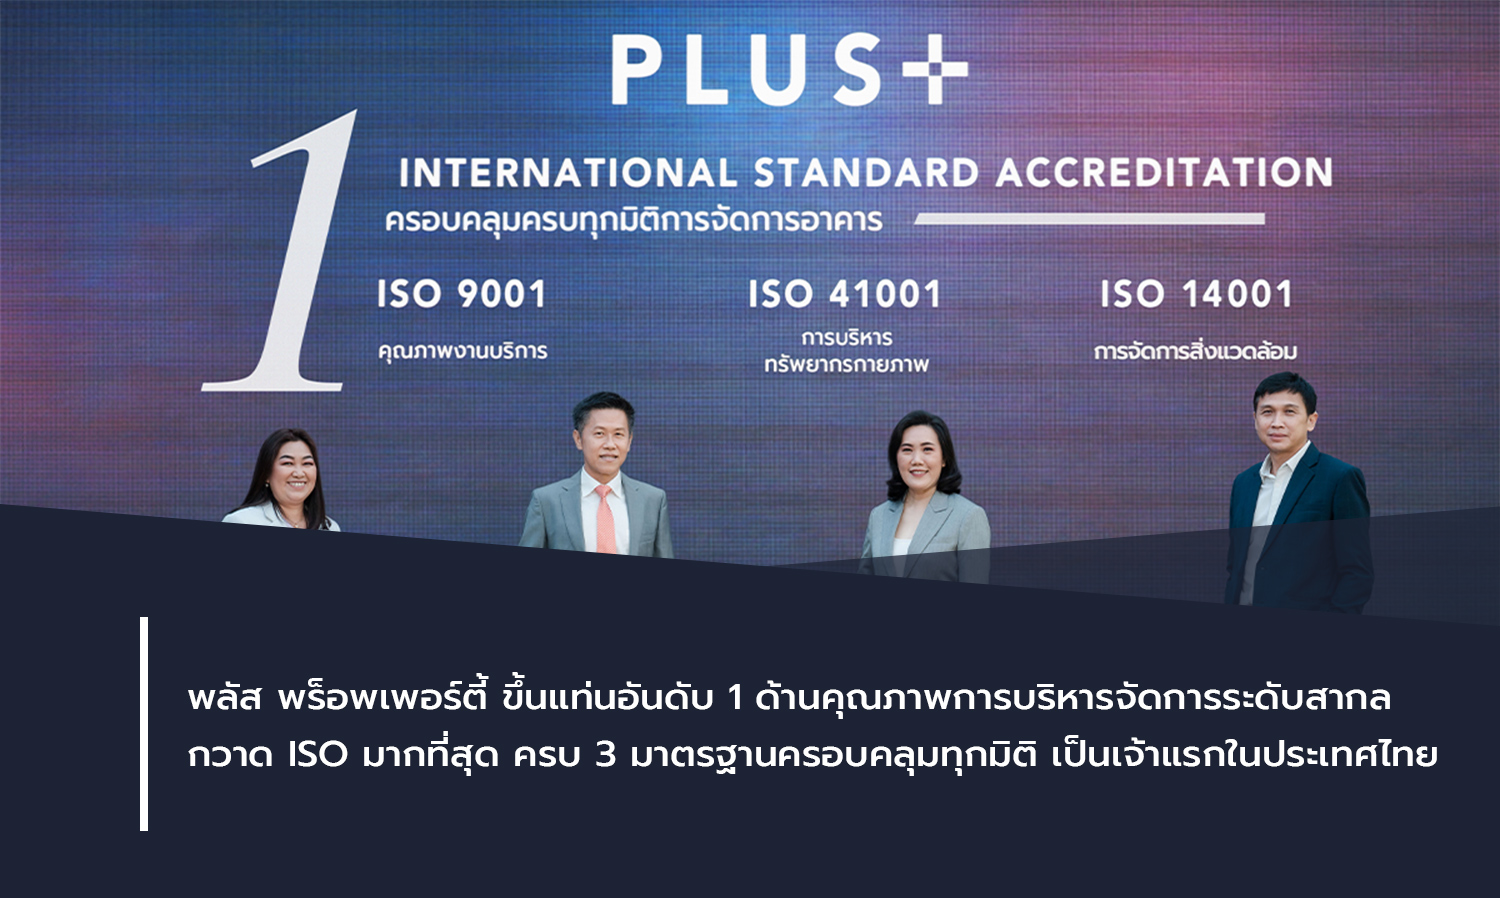 พลัส พร็อพเพอร์ตี้ ขึ้นแท่นอันดับ 1 ด้านคุณภาพการบริหารจัดการระดับสากล กวาด ISO มากที่สุด ครบ 3 มาตรฐานครอบคลุมทุกมิติ เป็นเจ้าแรกในประเทศไทย